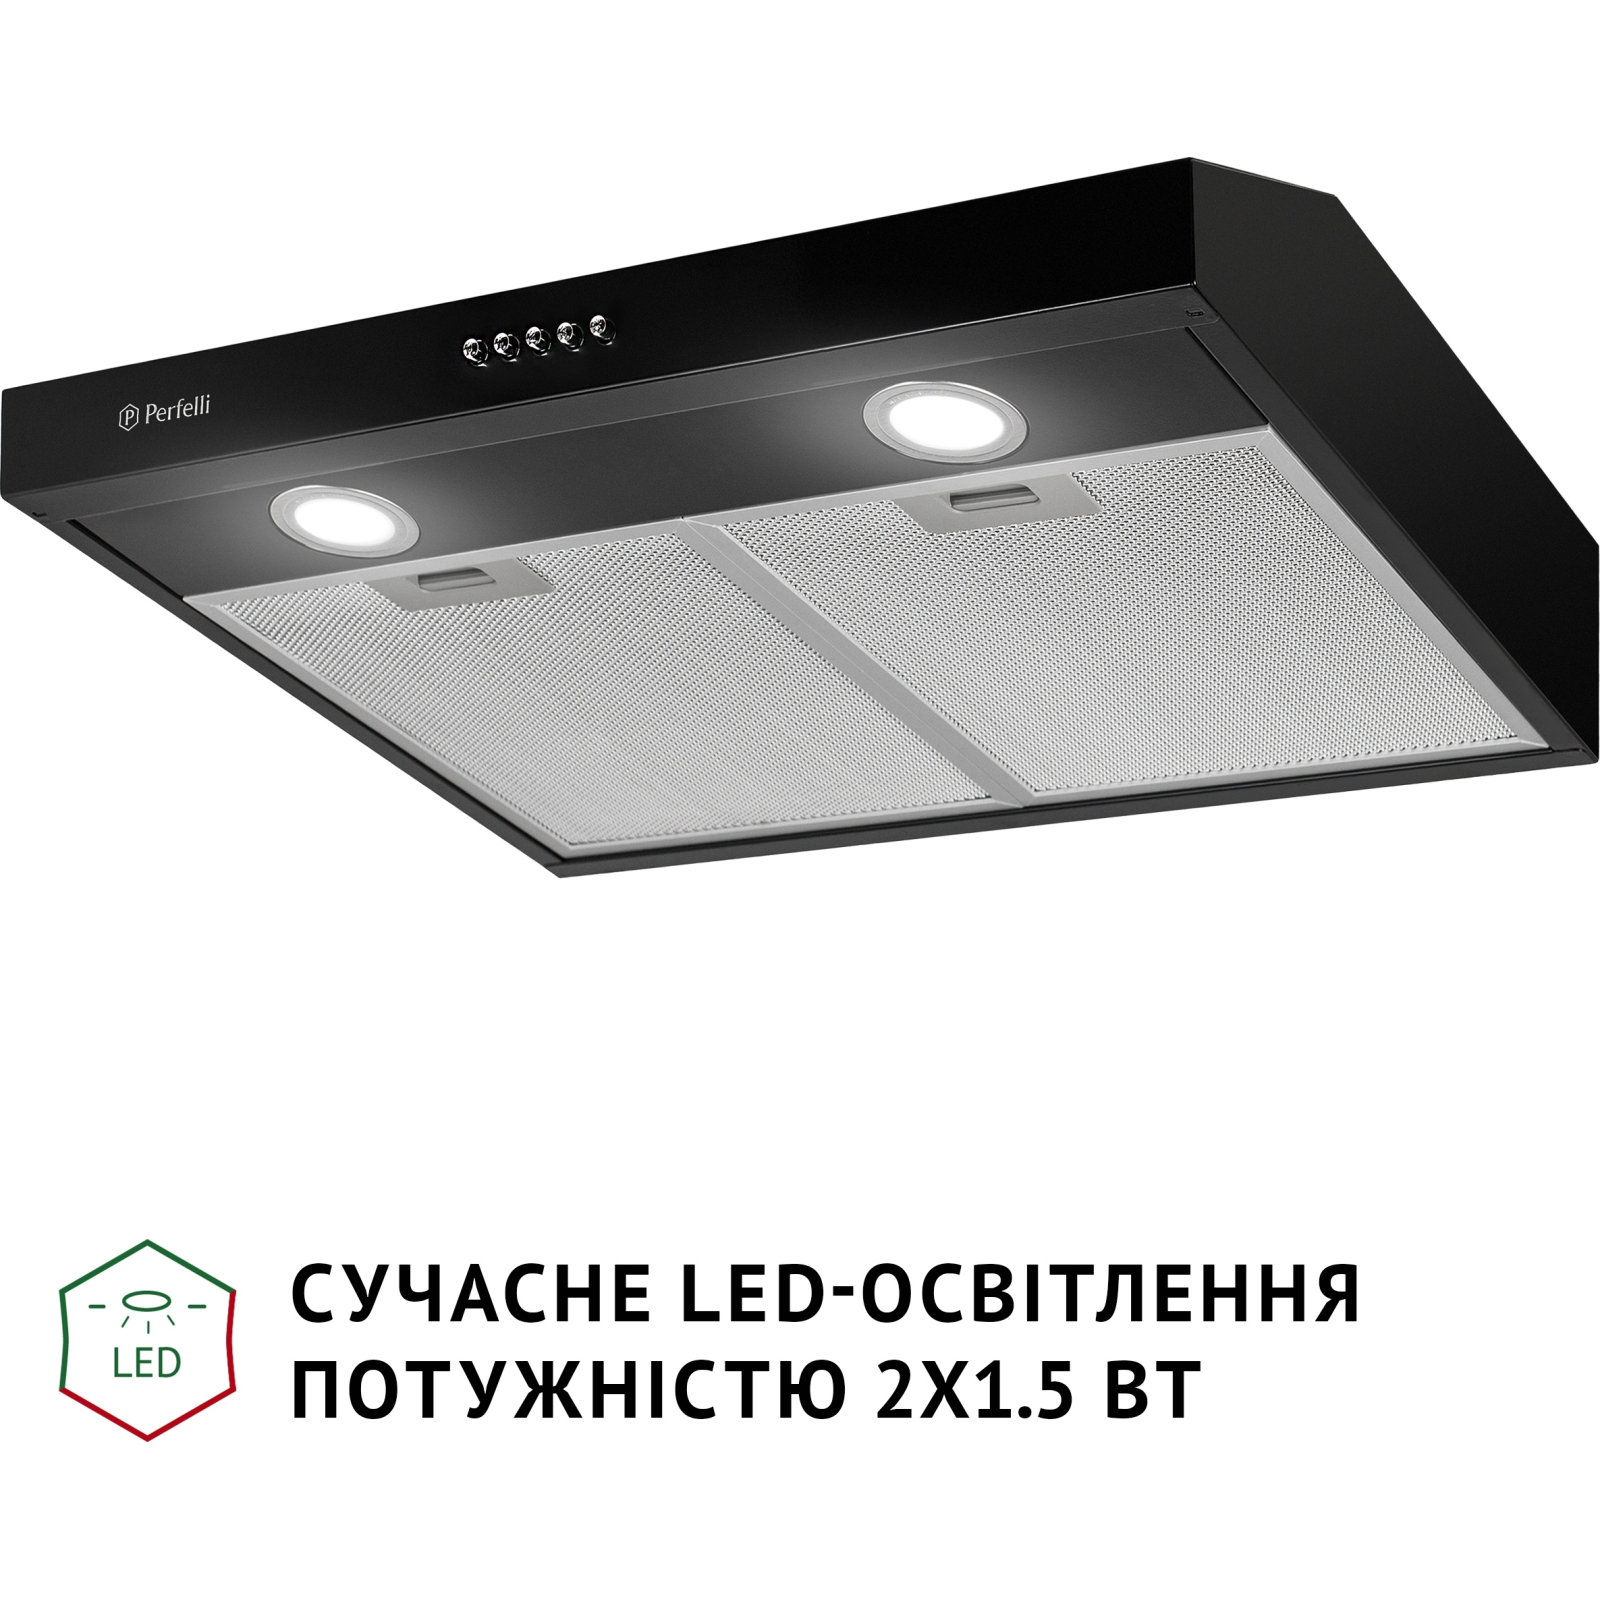 Вытяжка кухонная Perfelli PL 5002 I LED изображение 4